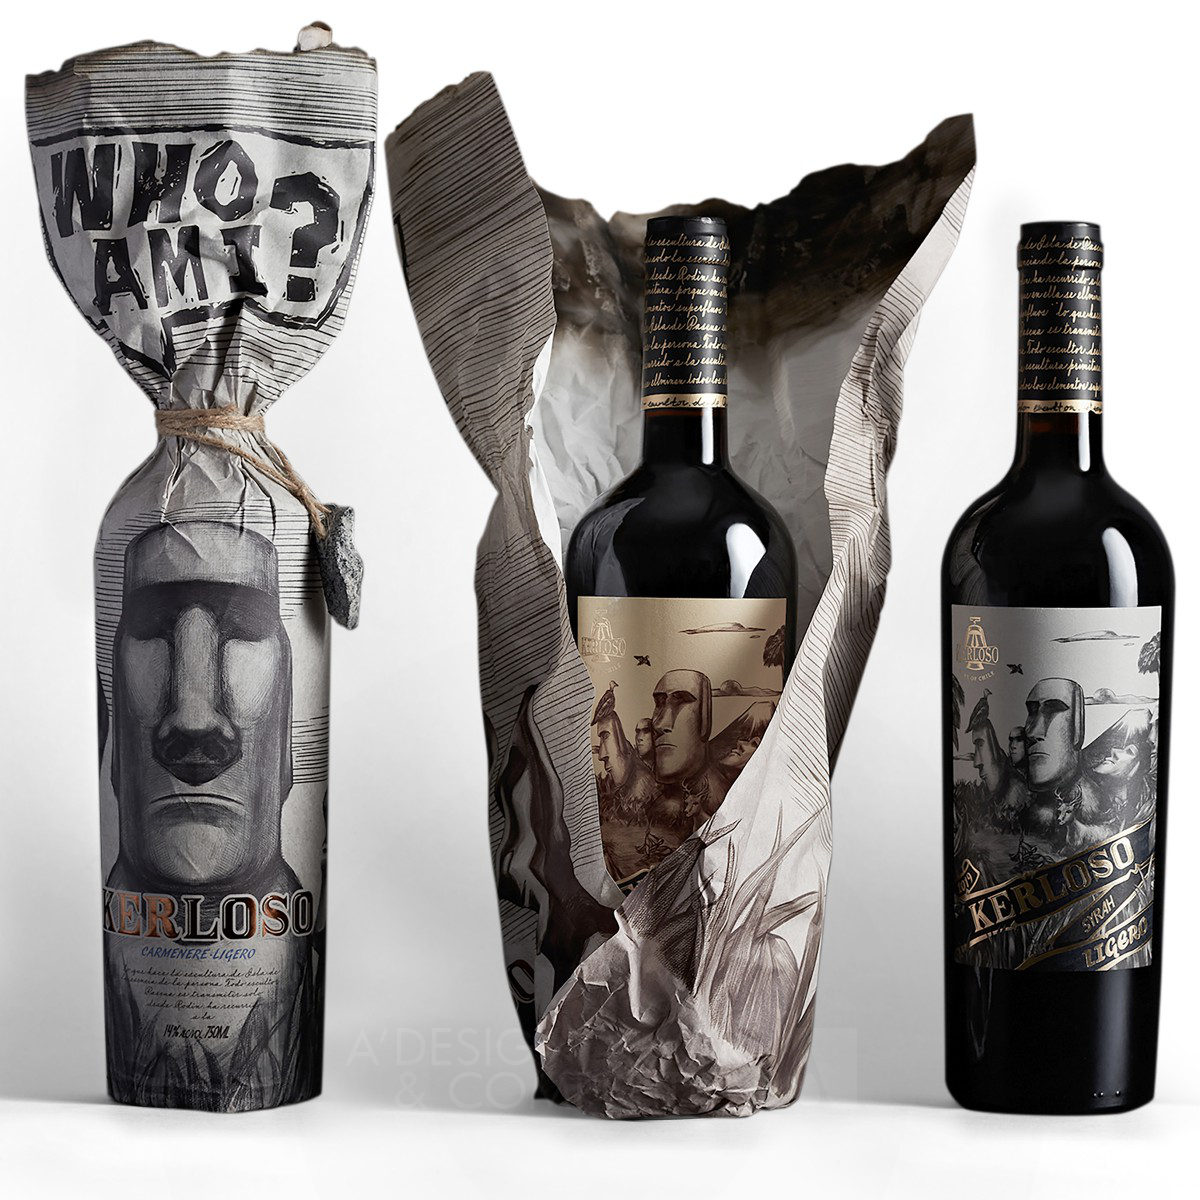 Kerloso Wine <b>Packaging